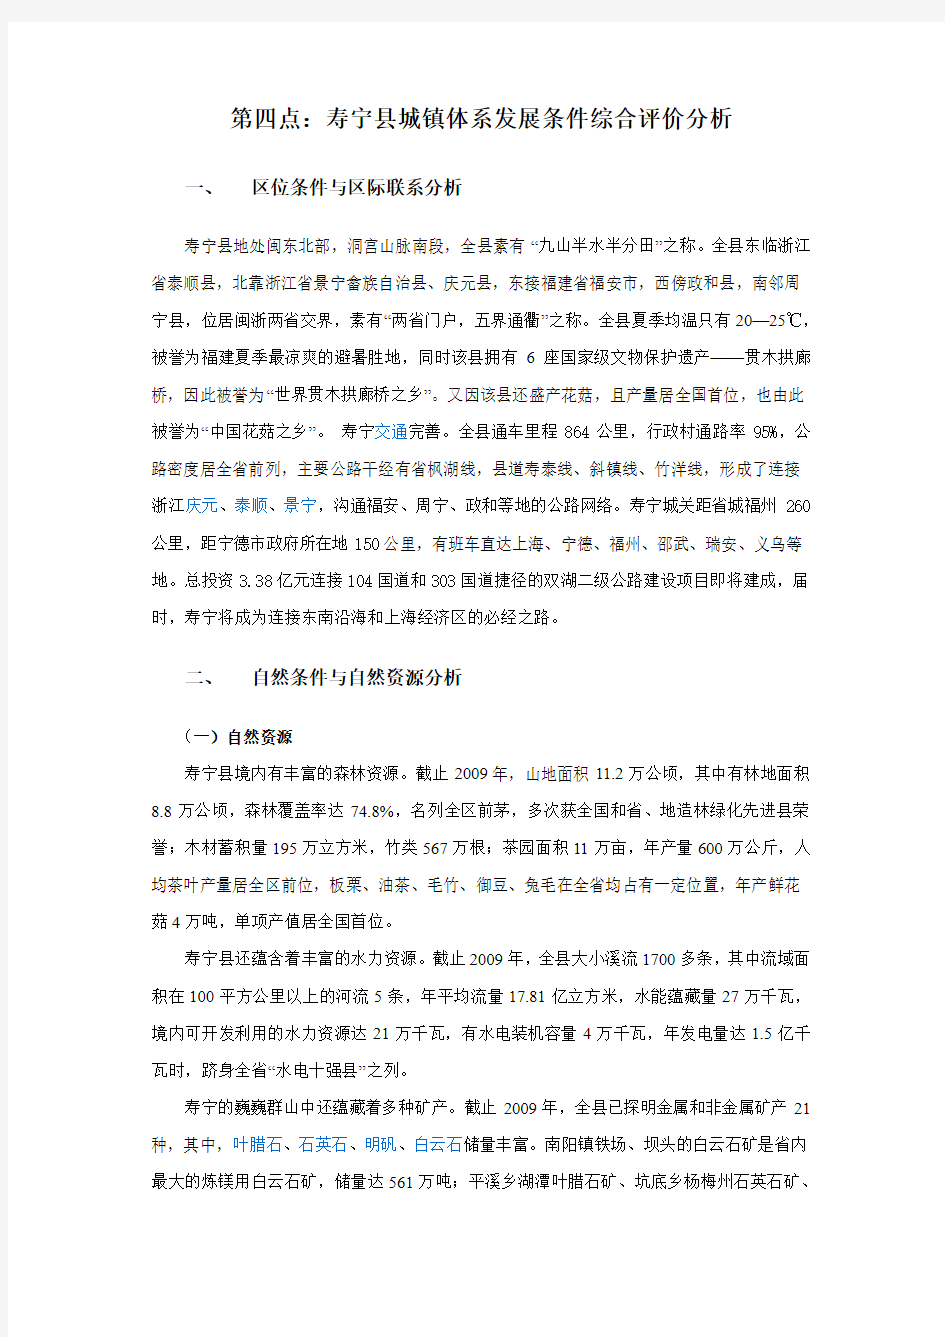 寿宁县发展条件综合分析